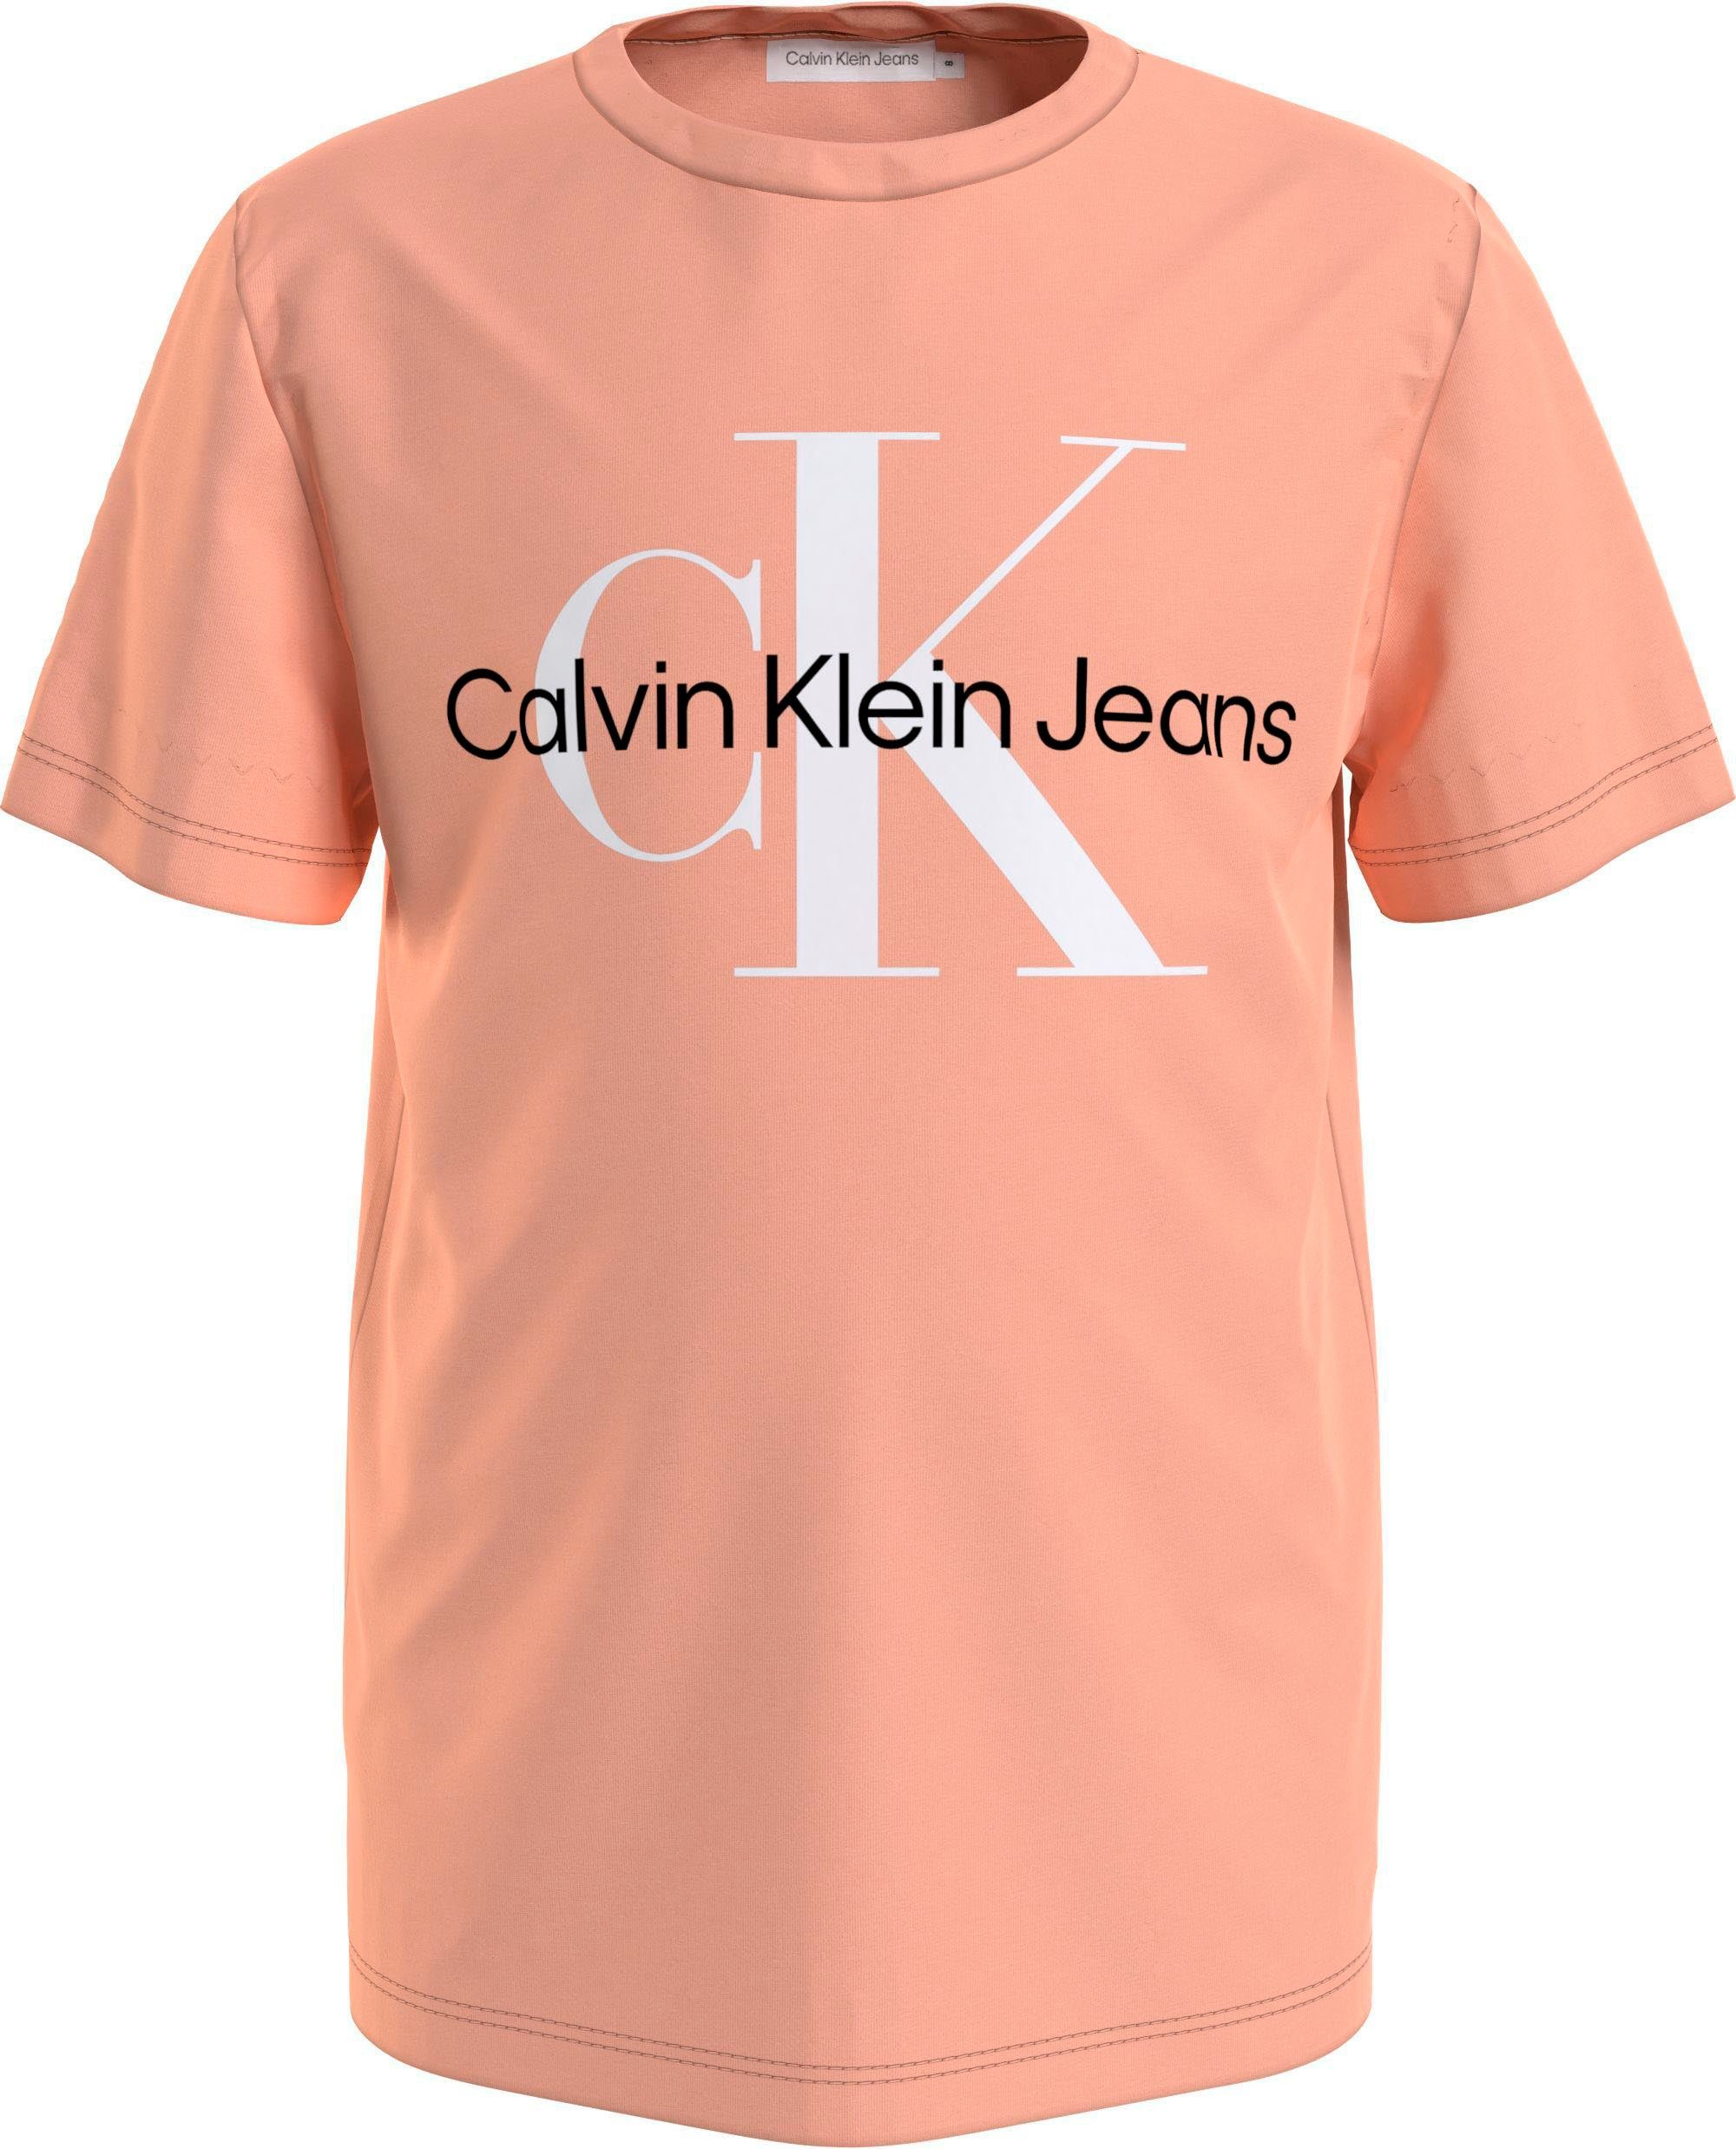 LOGO Kinder T-SHIRT Junior MiniMe,für Calvin Kids MONOGRAM und Jungen Klein Jeans T-Shirt hellorange Mädchen